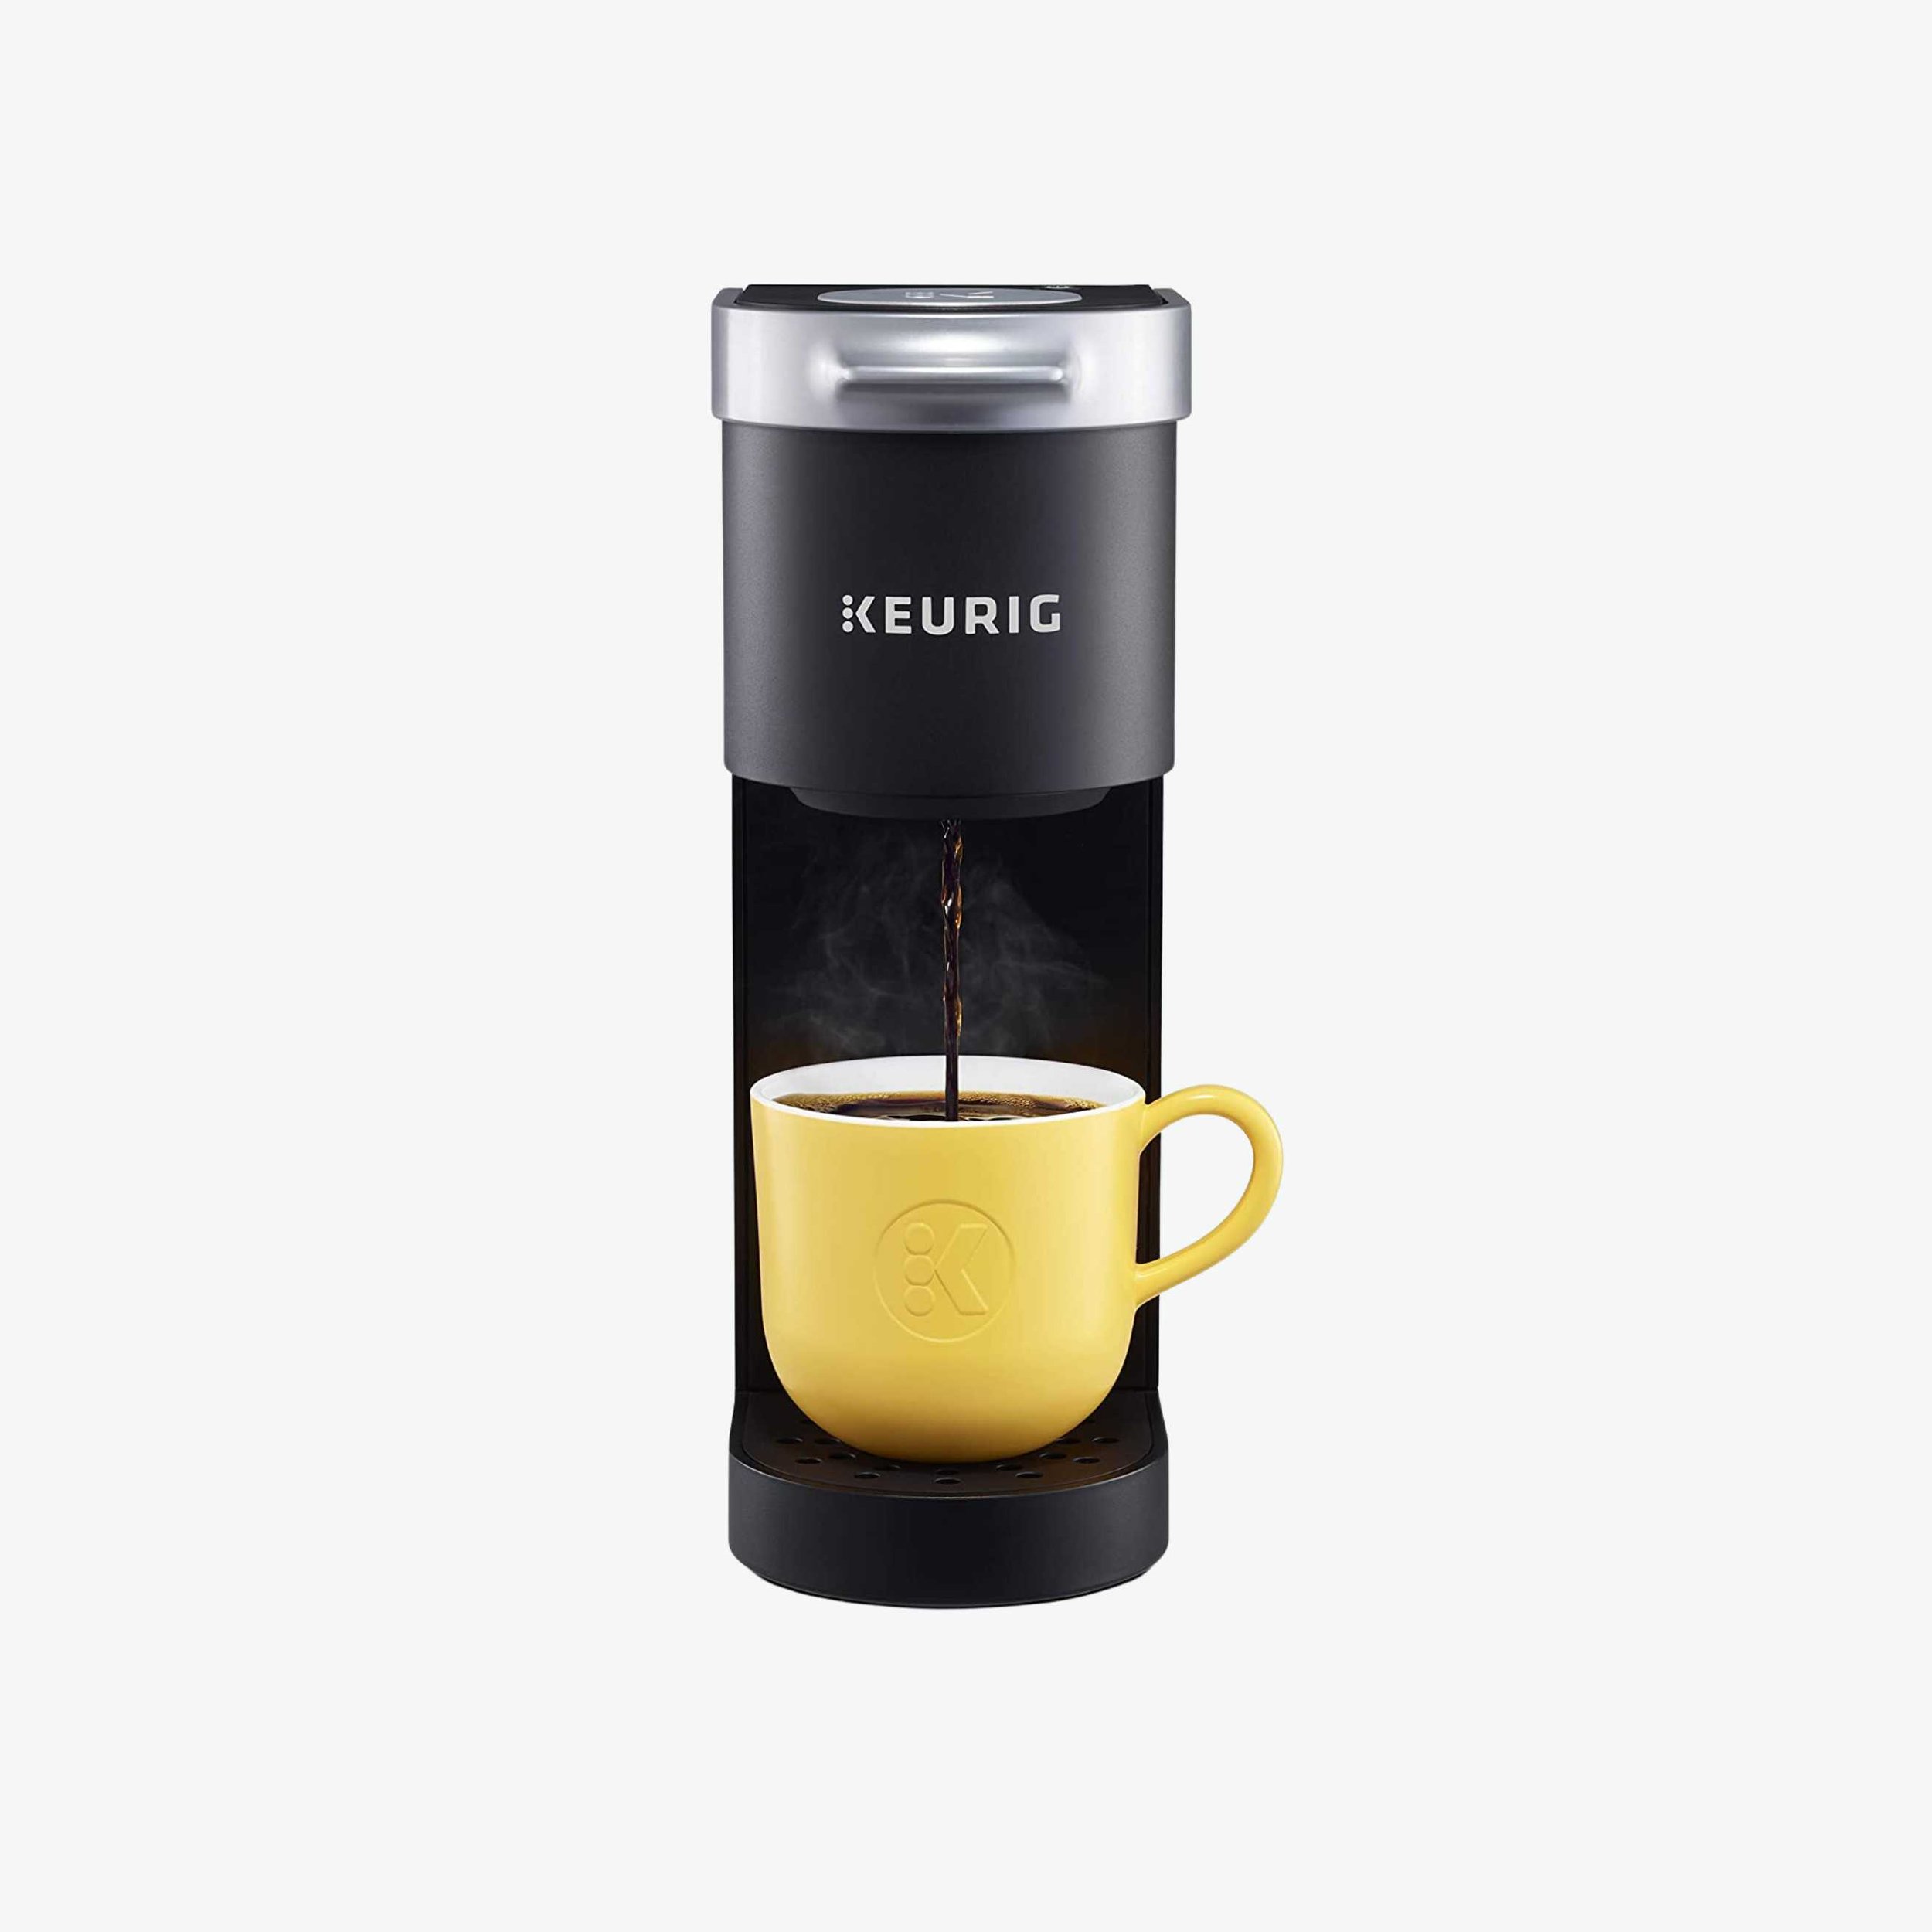 Single Cup Keurig Coffee Maker.jpg